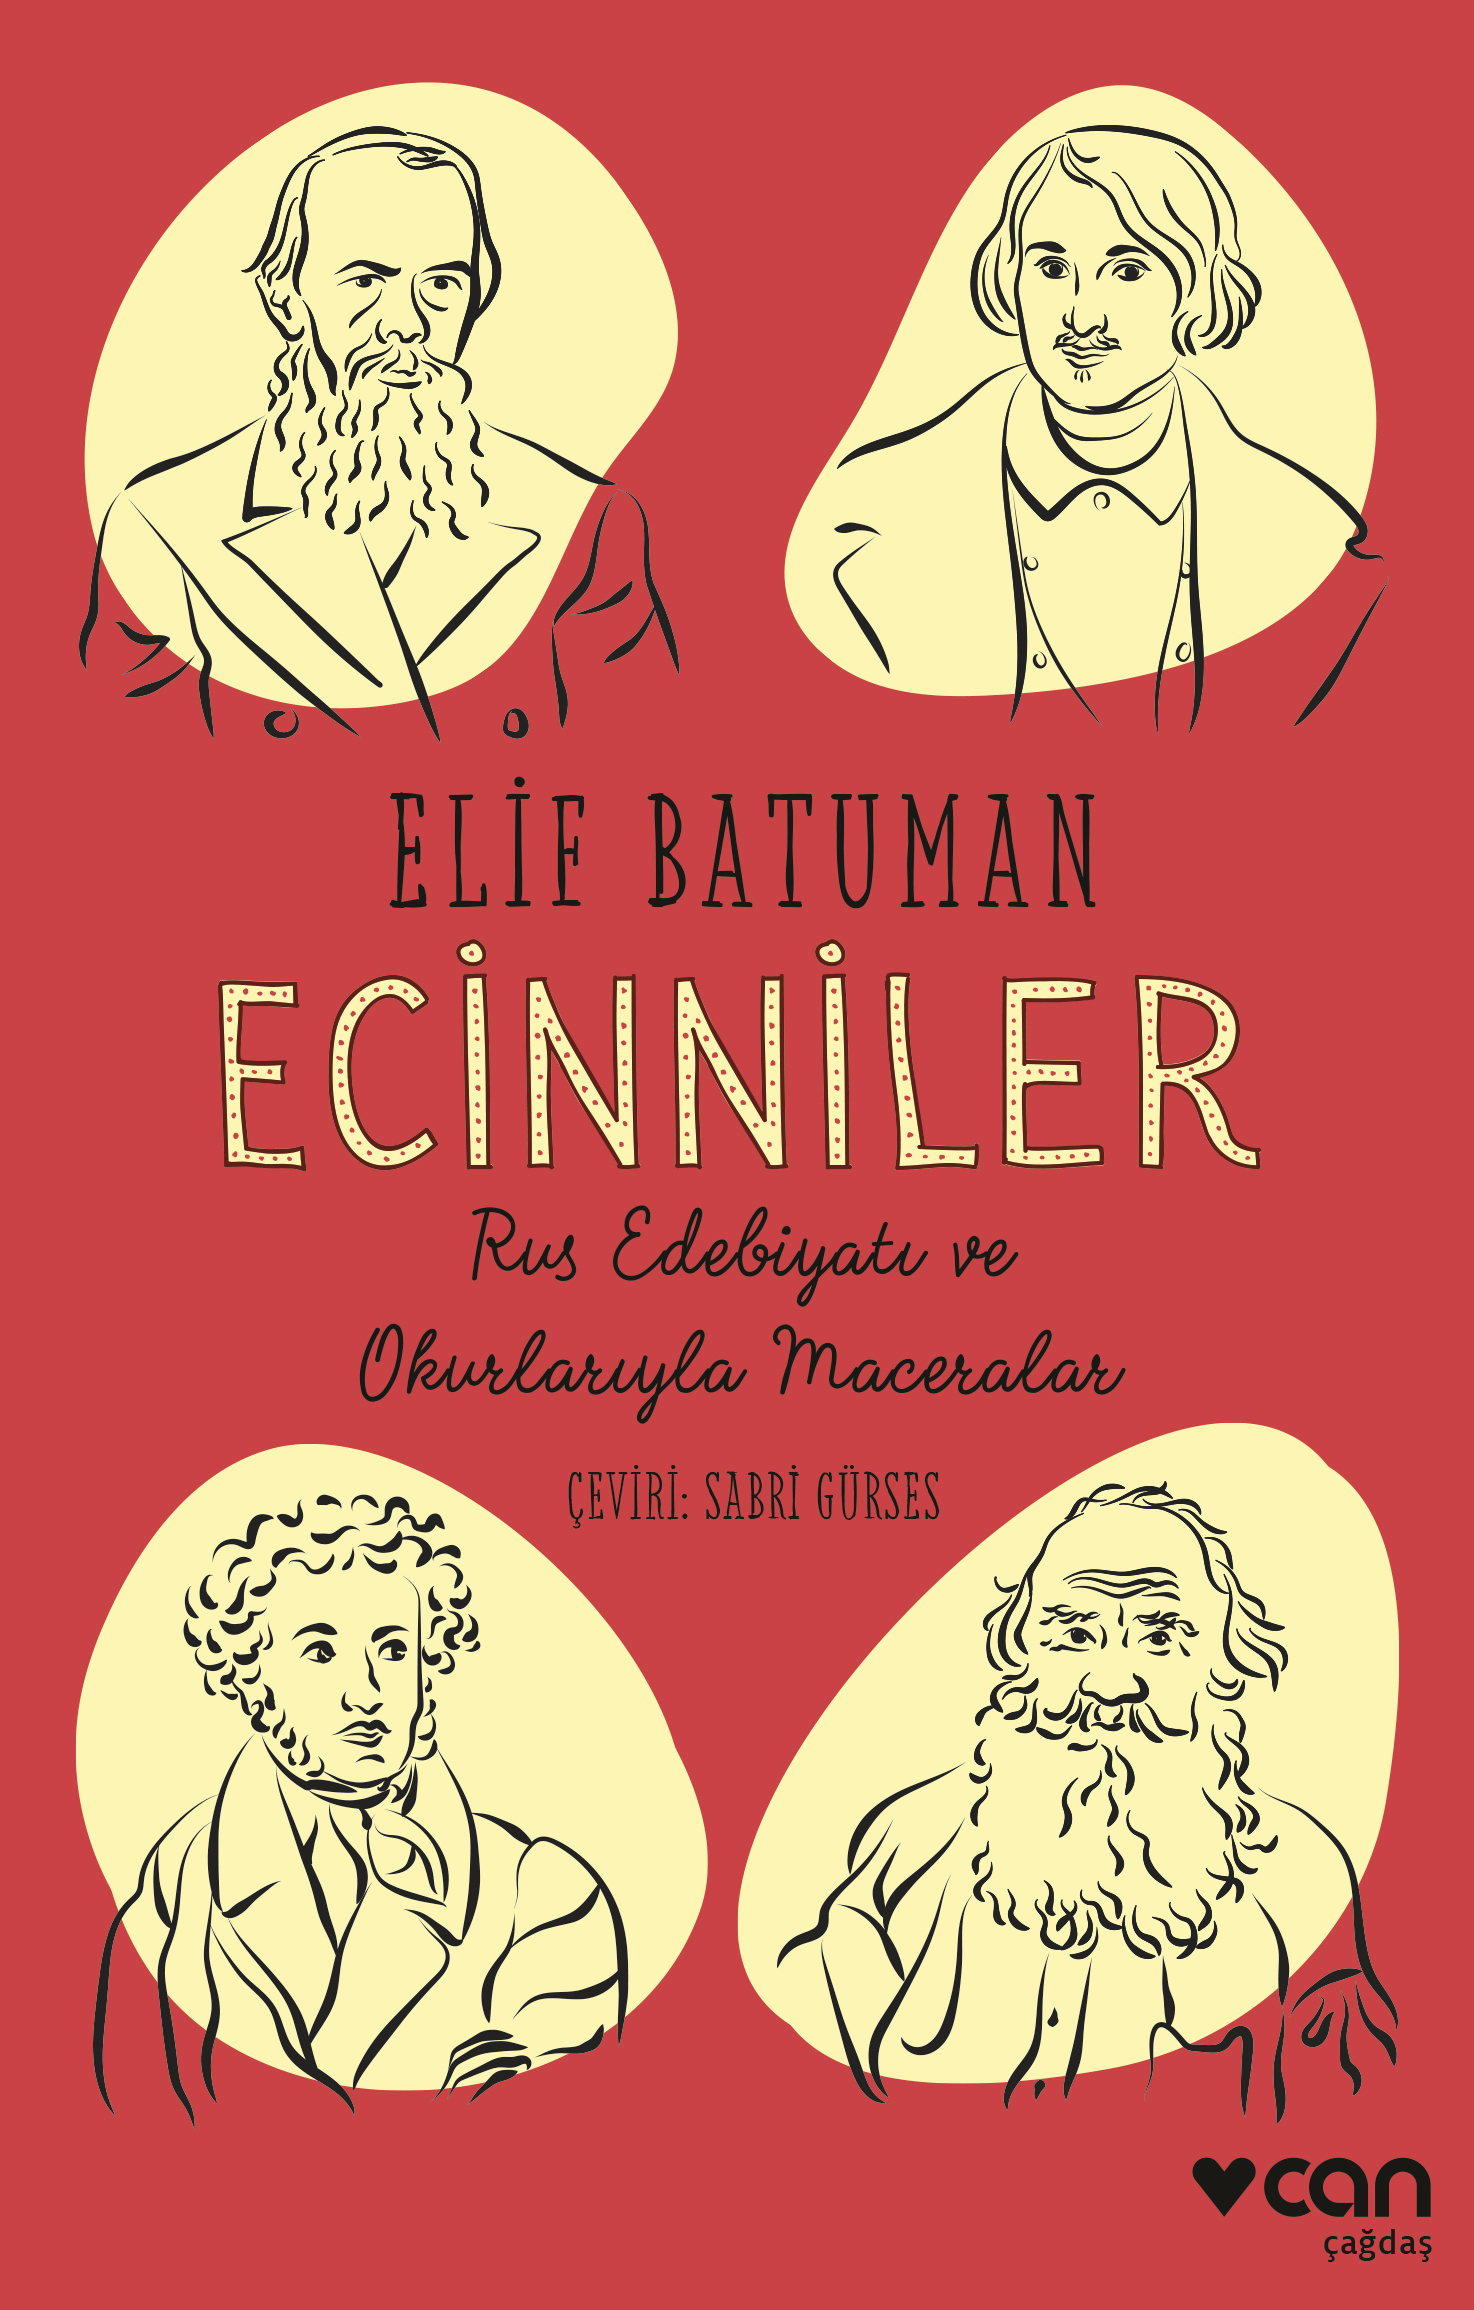 Rus edebiyatı üzerine yazılmış en komik kitap Ecinniler, Can Yayınları etiketiyle yeniden raflarda!